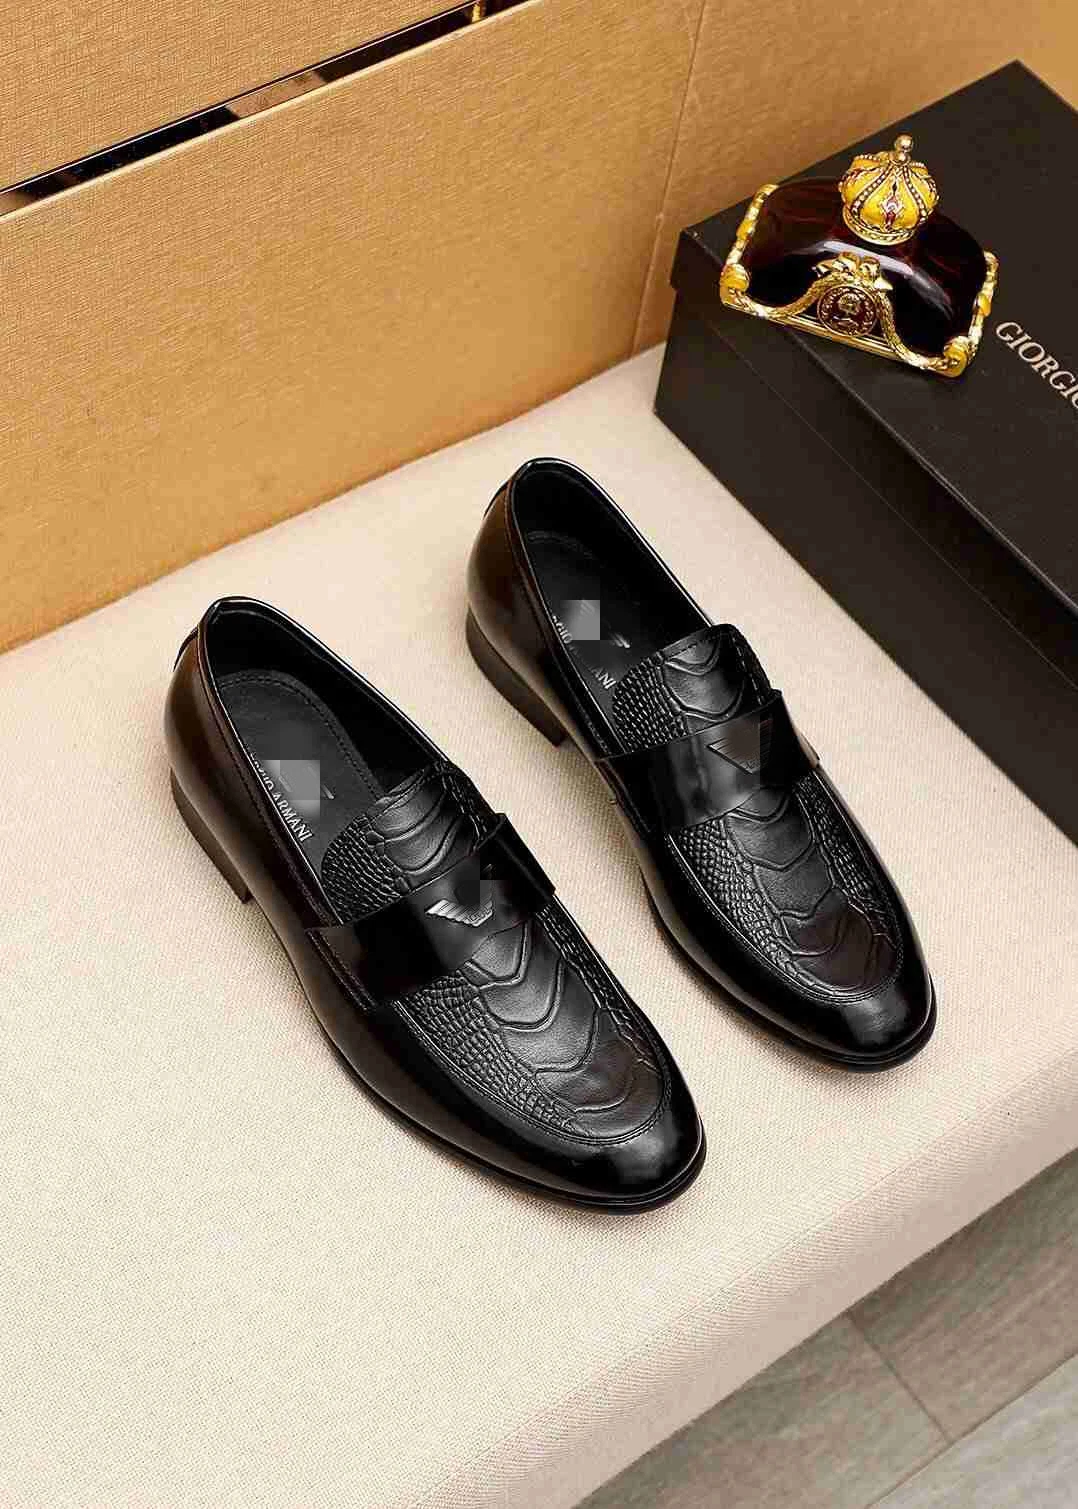 New Style Loafers British Retro Business Casual Men&prime; S Shoes Luxury Men Shoes Clutch Shoes Men Shoes Designer Shoes Fashion Shoes